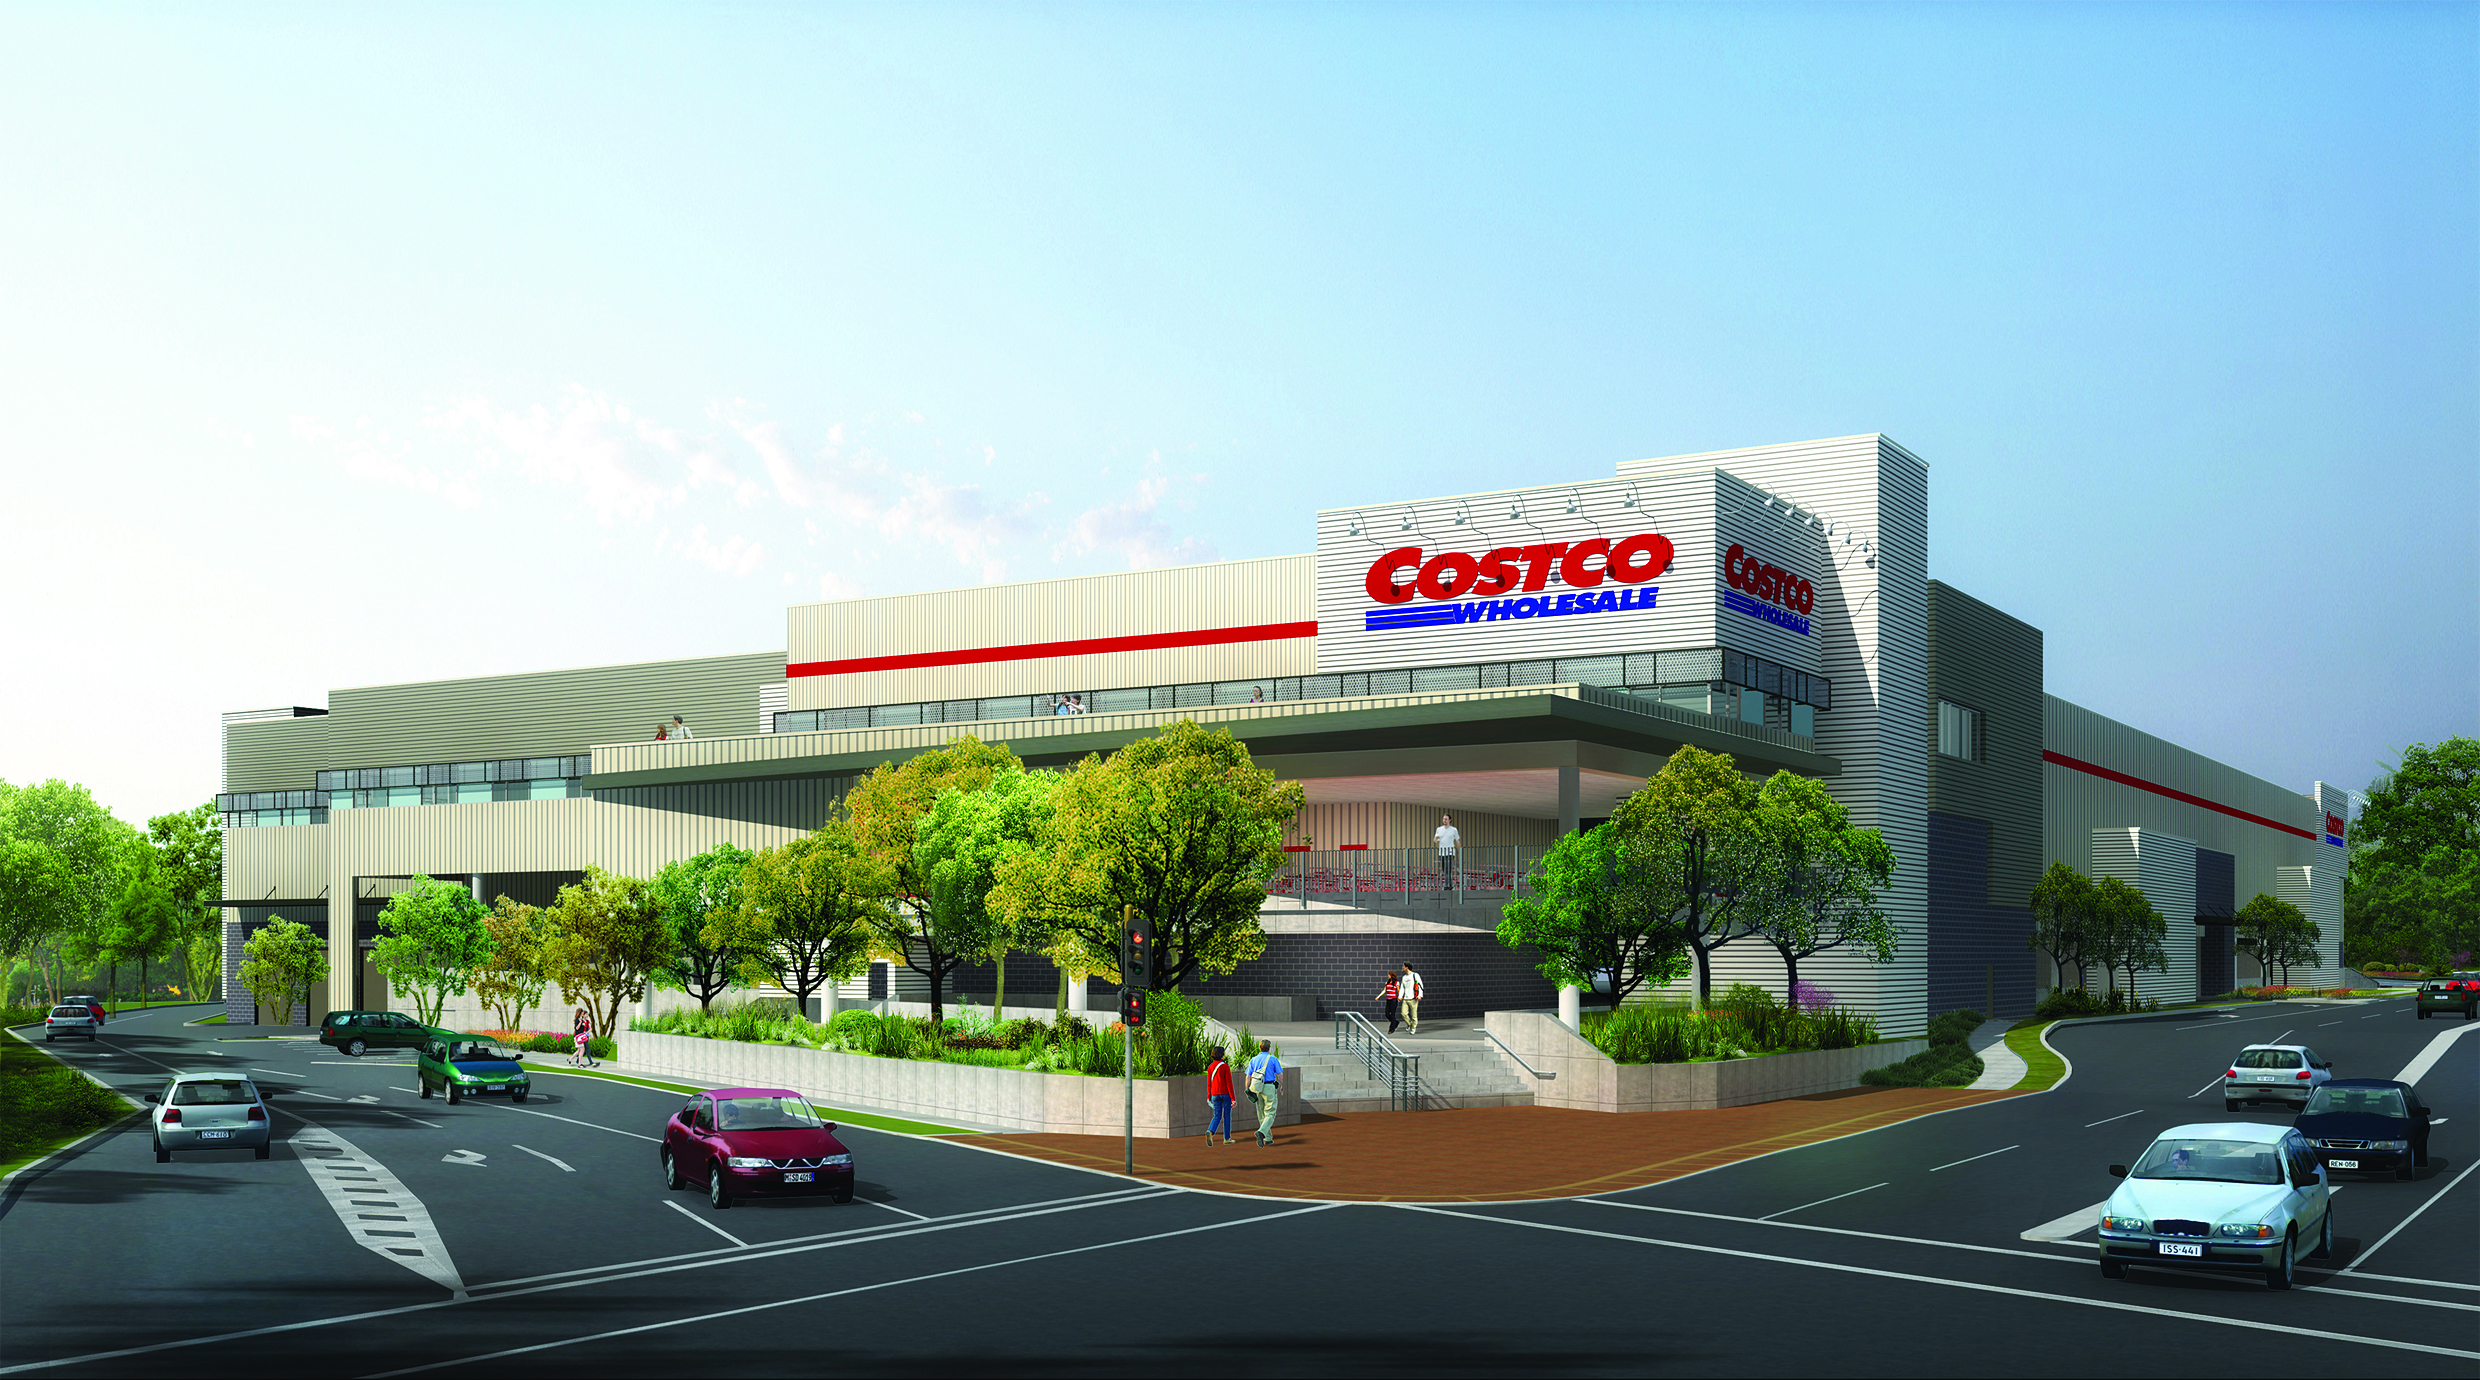 Costco Wholesale (Australia) Pty Ltd